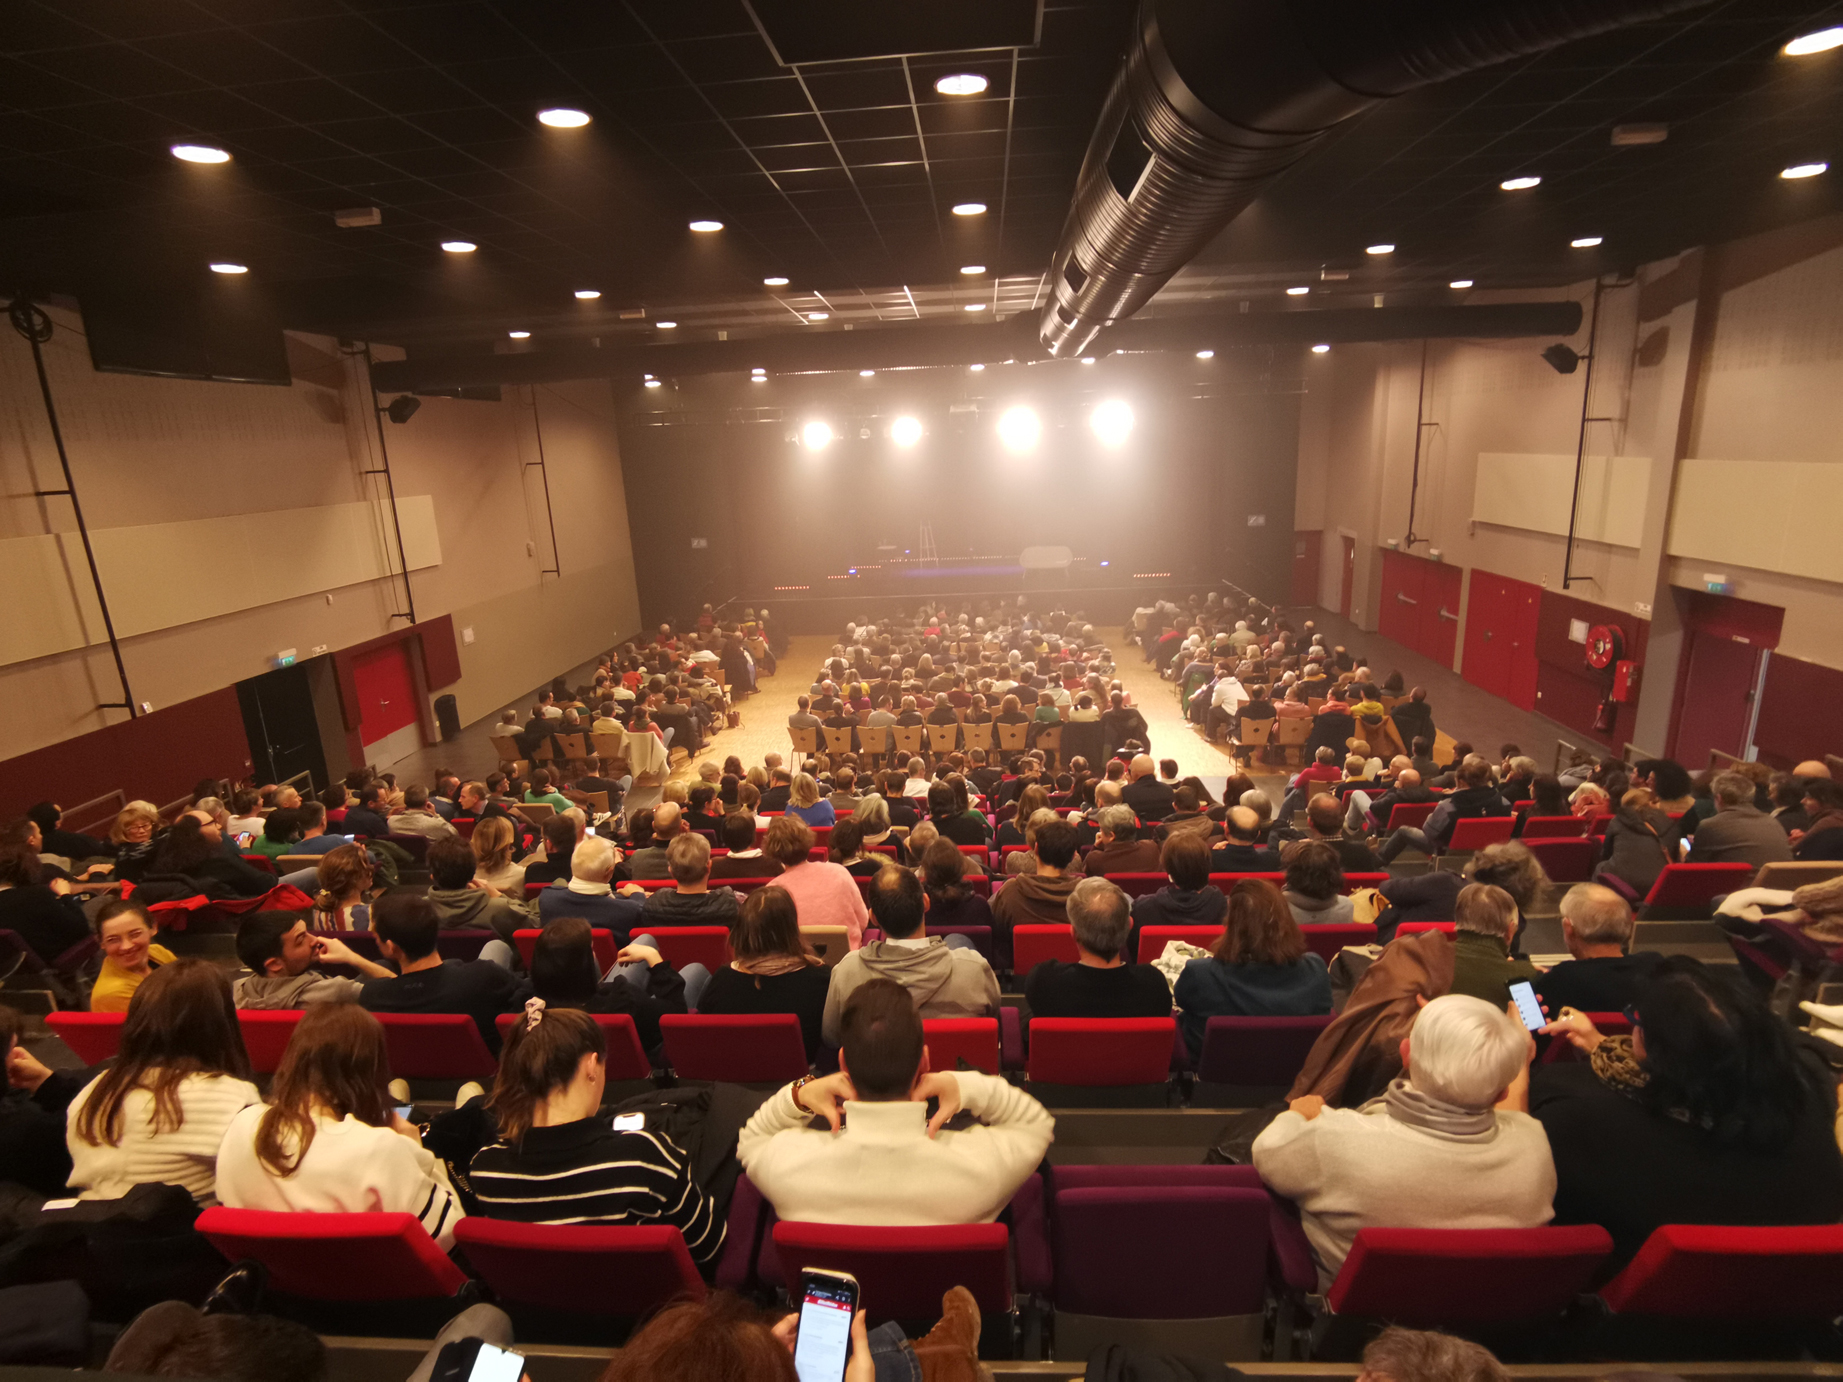 La salle de spectacle du Centre culturel Le Plessis Sévigné remplie de spectateurs